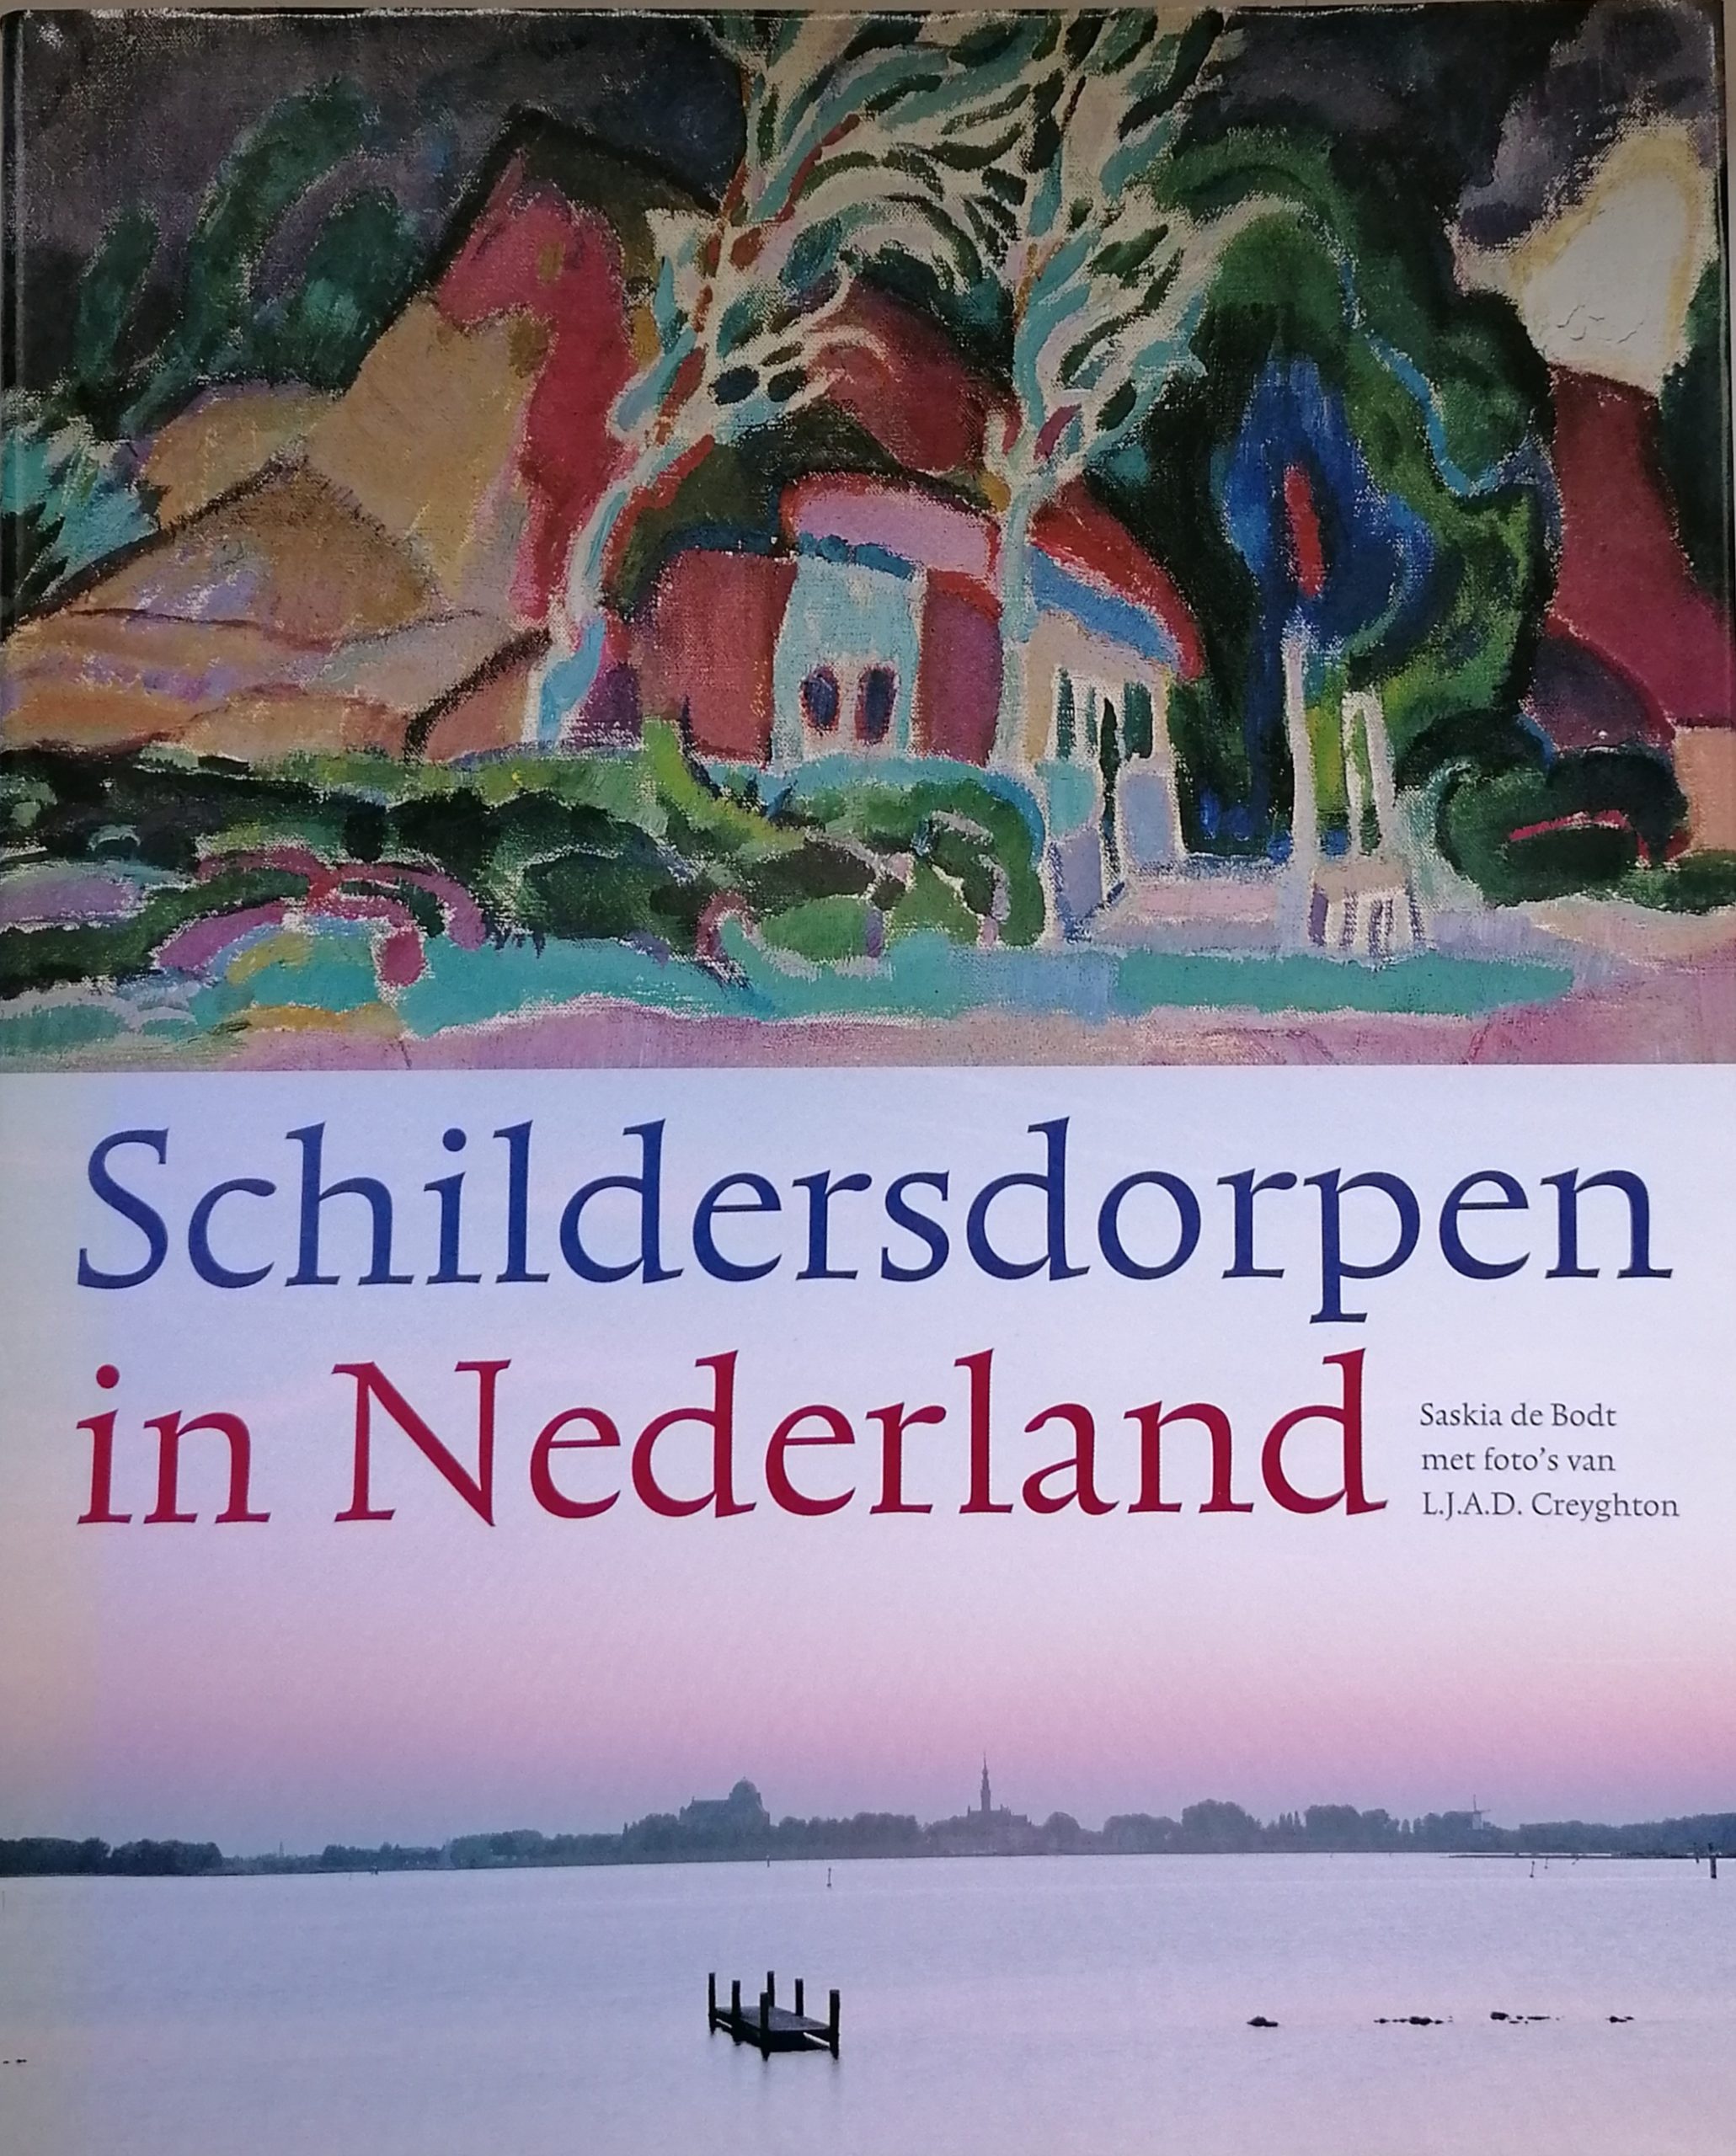 Schildersdorpen in Nederland